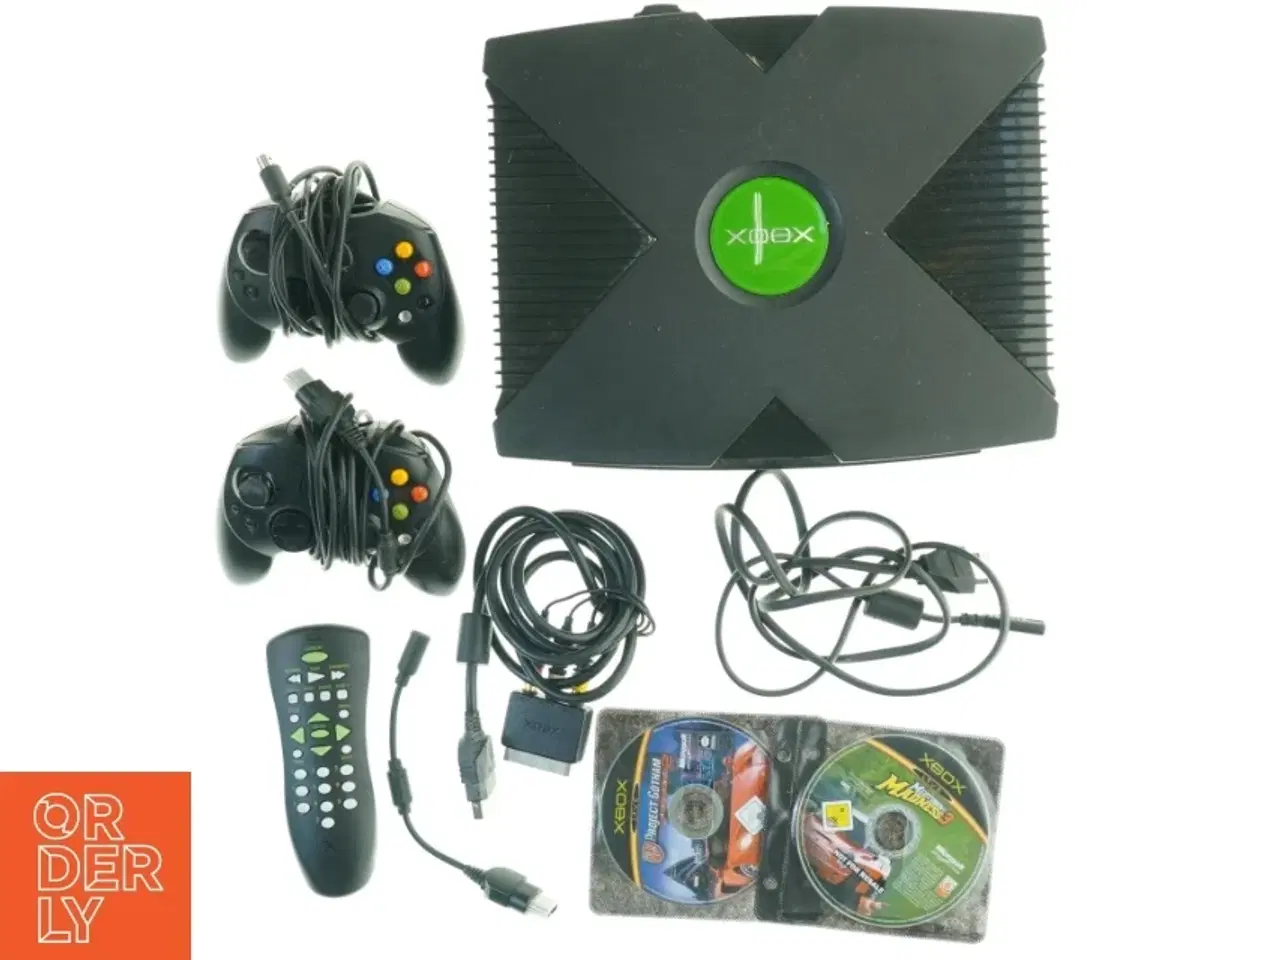 Billede 1 - Original Xbox konsol med tilbehør fra Xbox (str. 32 x 24 x 7 cm)